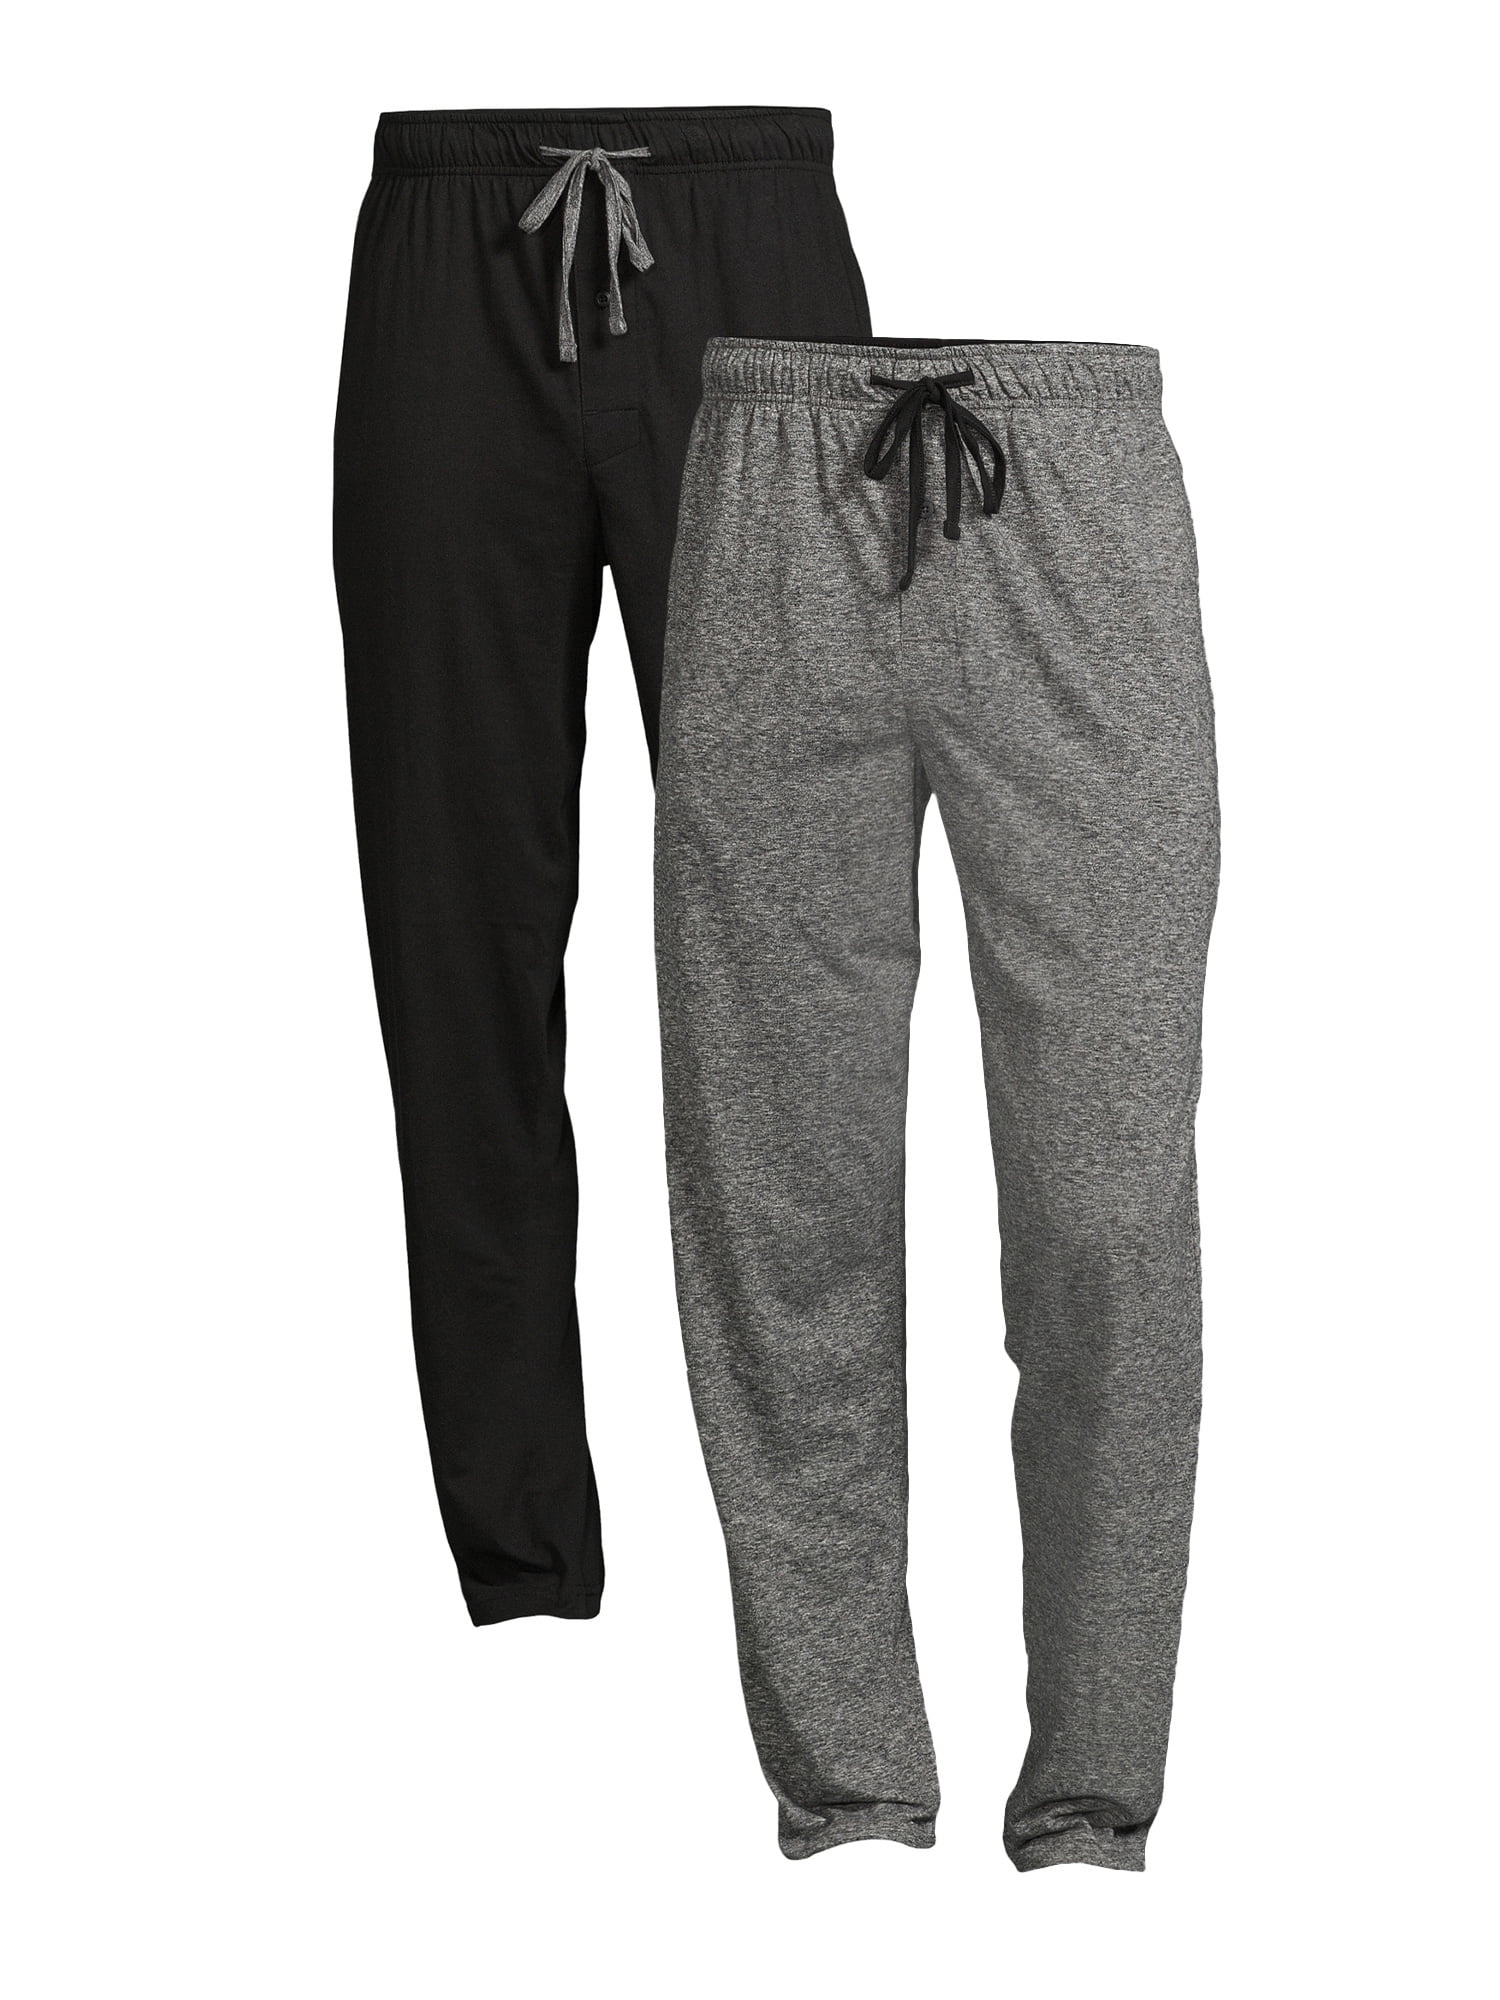 George Men's Solid Sleep Pajama Pants, 2-Pack 